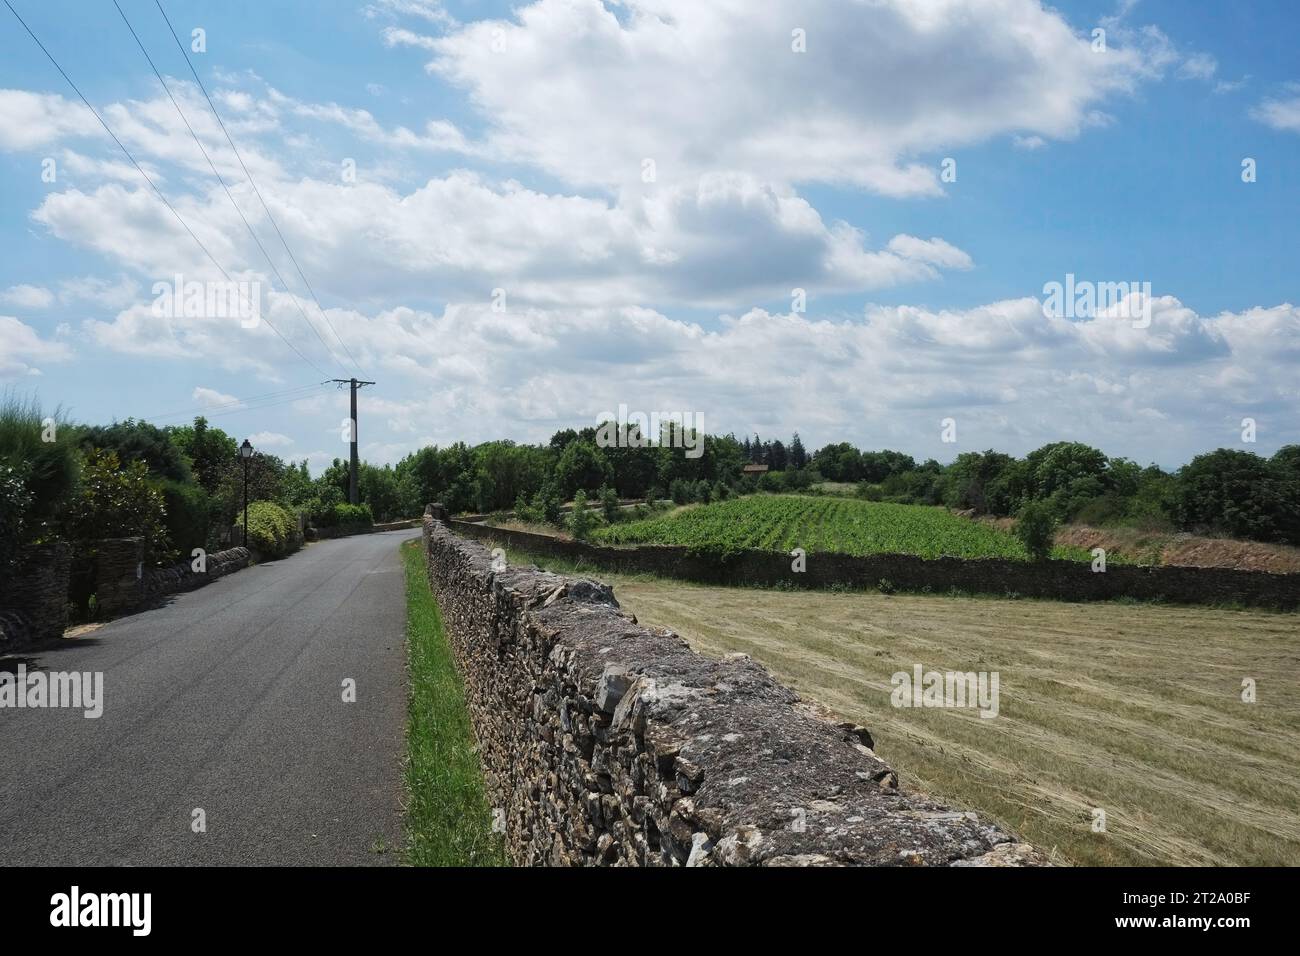 Una strada di campagna francese che passa davanti alle fattorie fuori dal borgo medievale di Charnay, un muro di pietra a secco, un campo di fieno, nuvole bianche in cielo Foto Stock